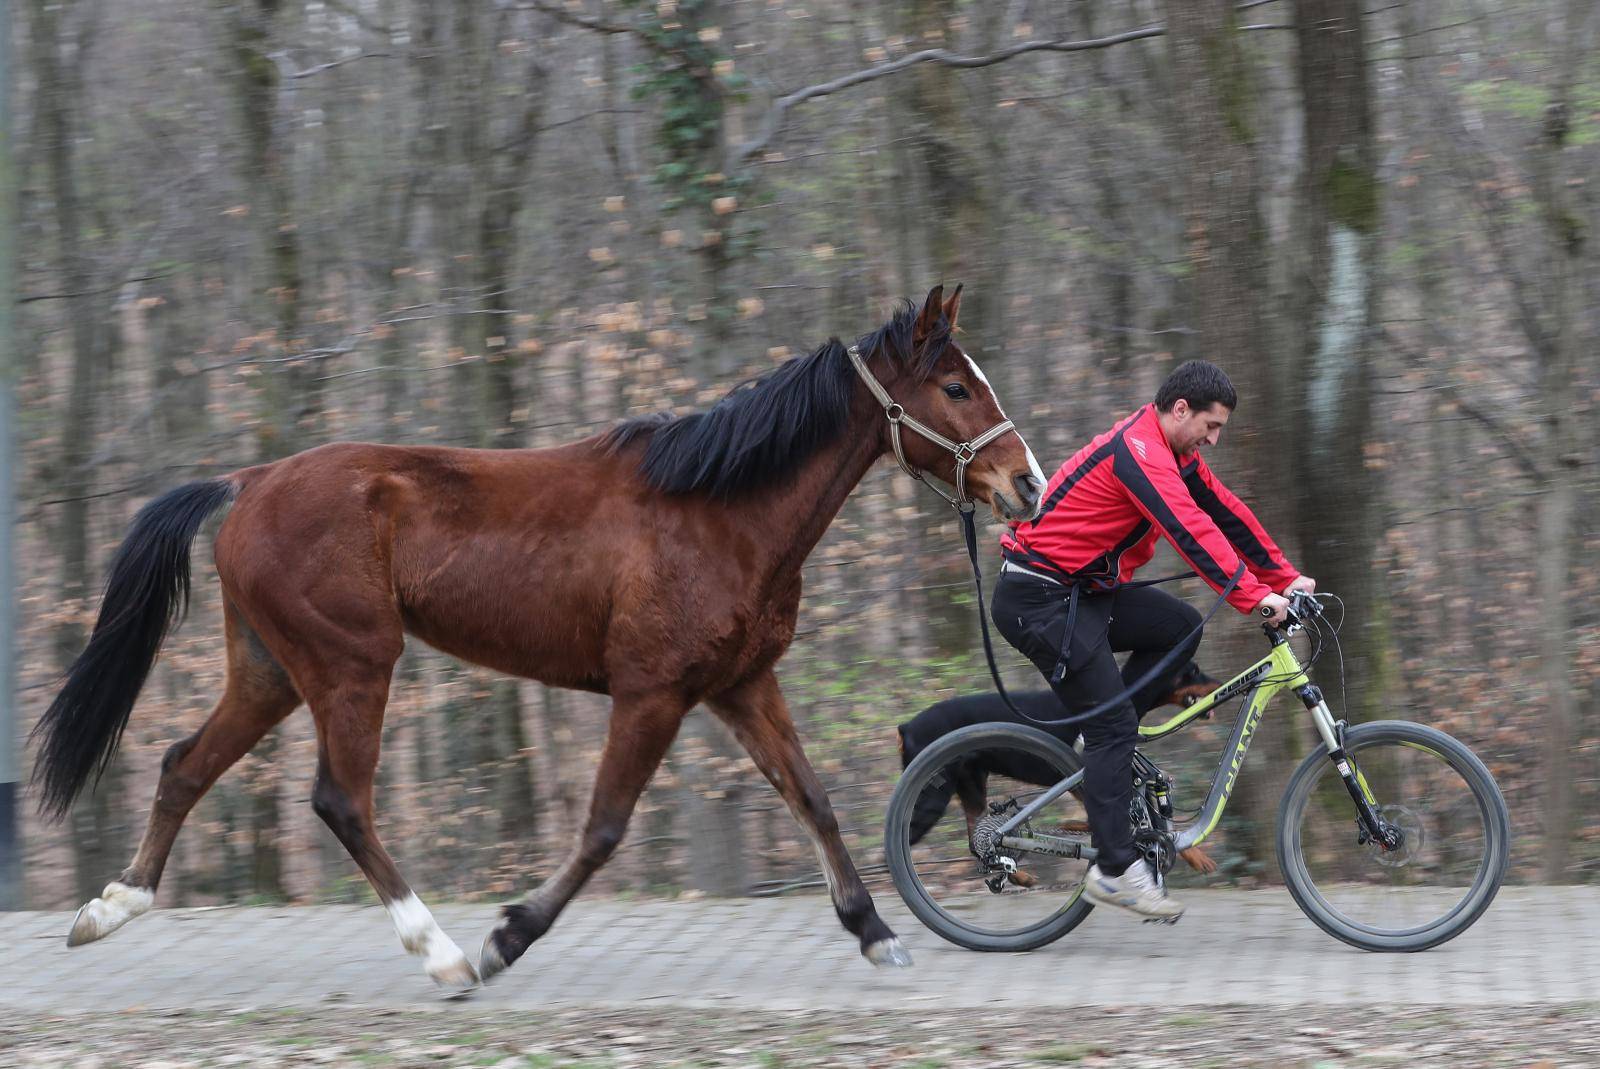 'Moj konj Kasper i ja jurimo šumama čak do 60 km na sat'